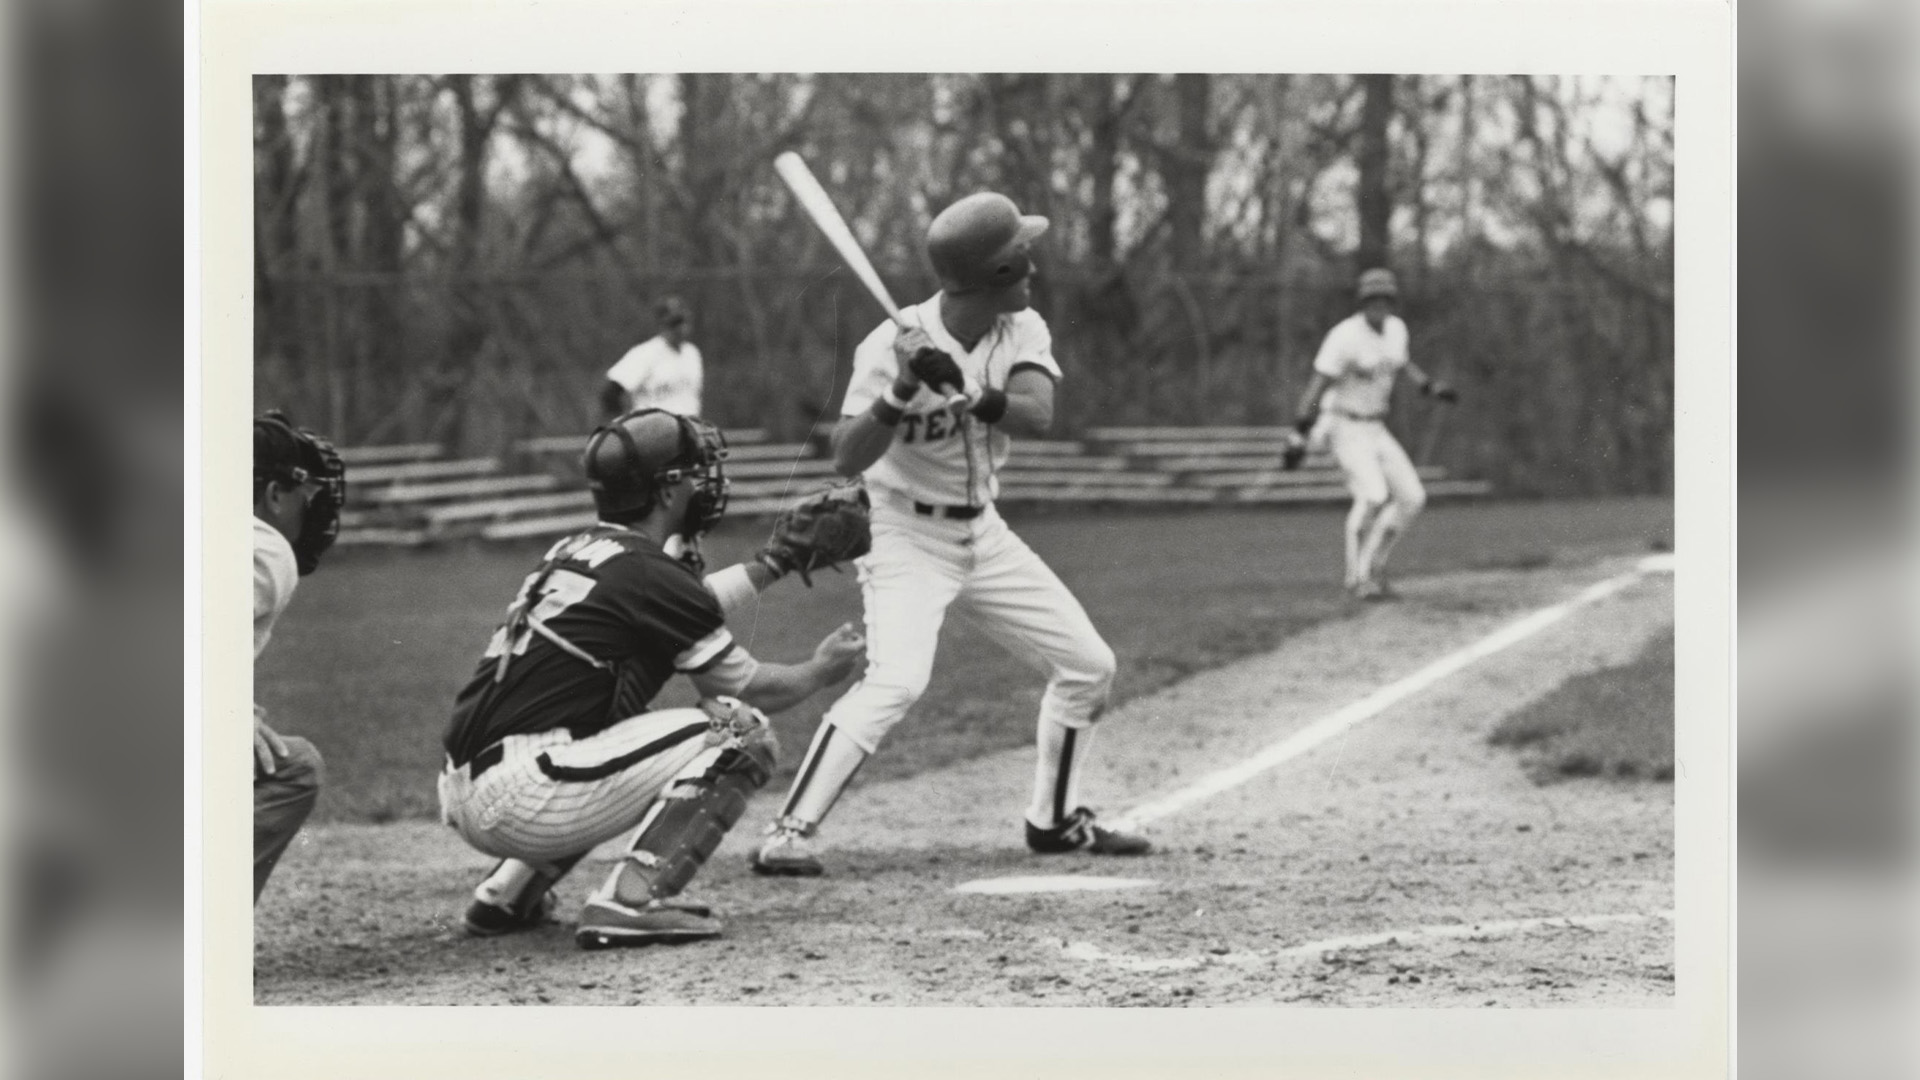  Men's baseball, 1987